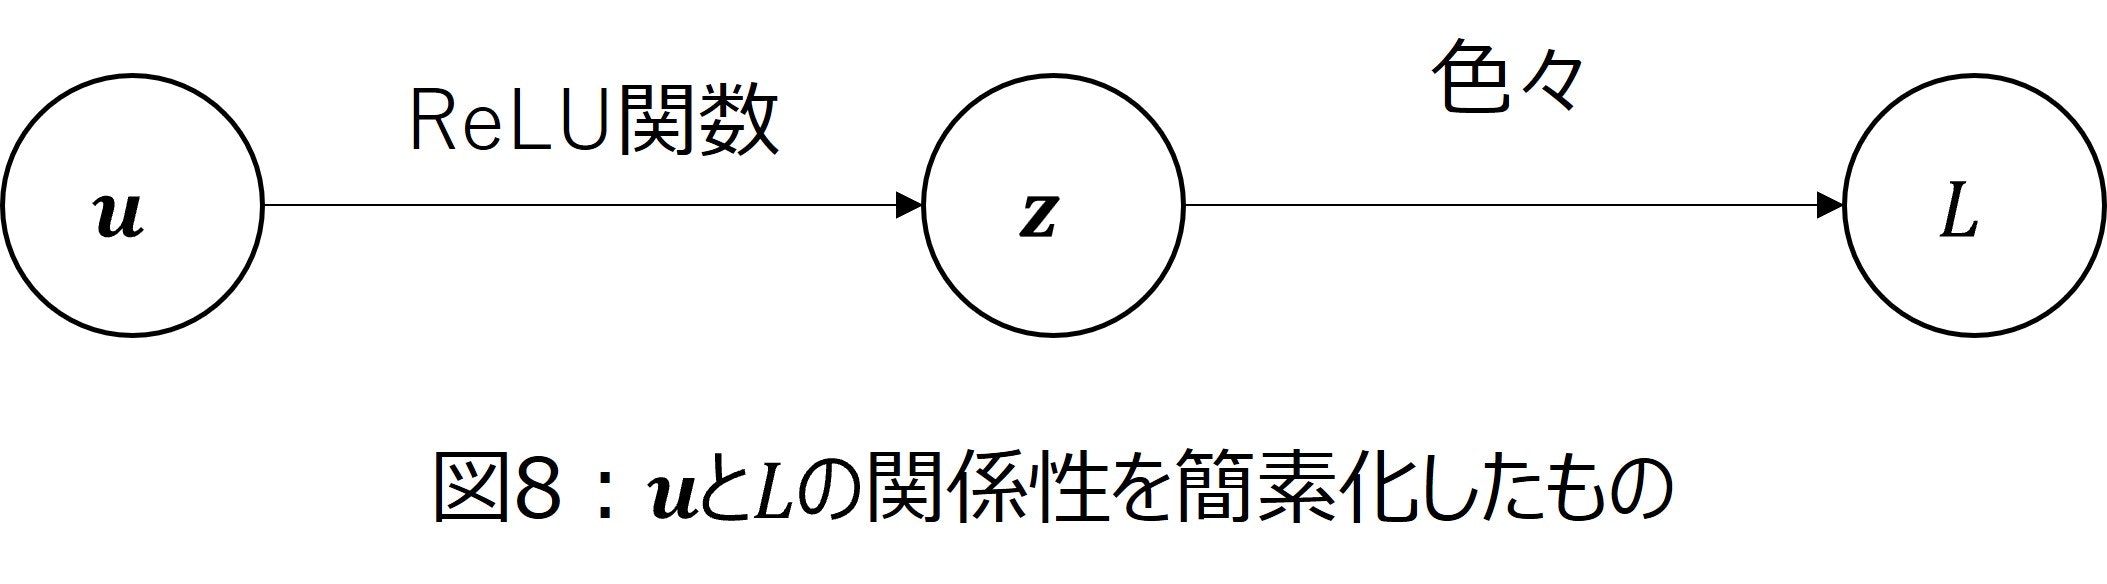 図8_uと損失関数の関係性を簡素に捉え直したもの.jpg